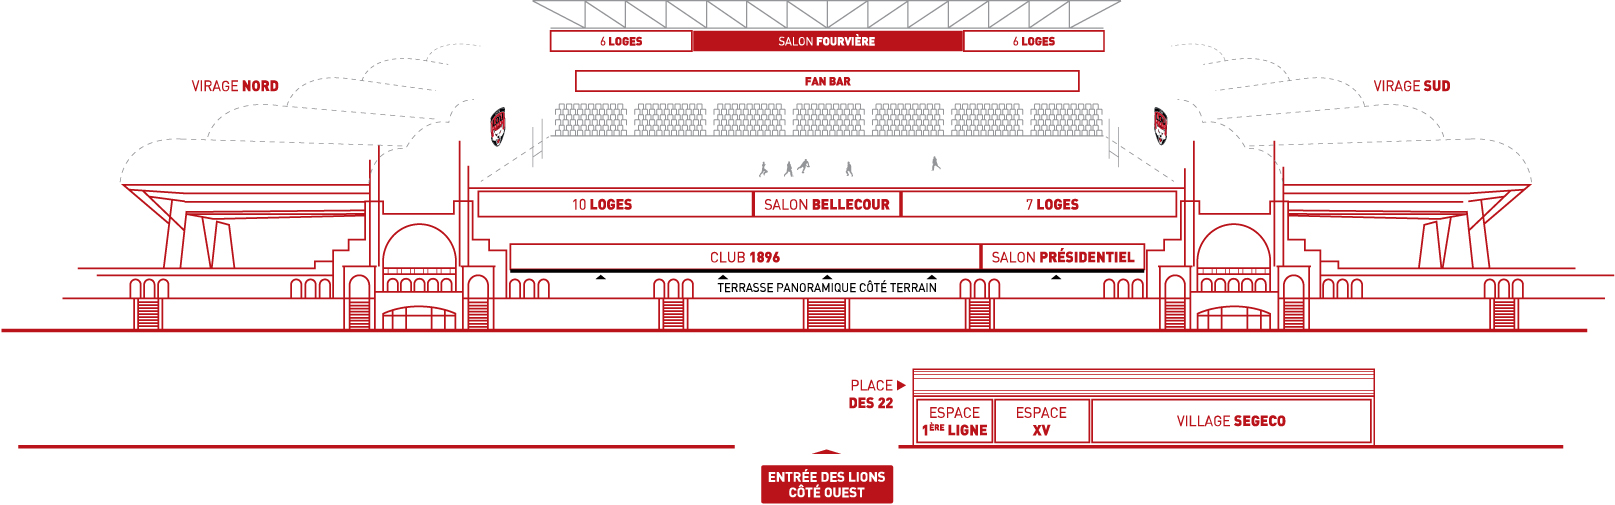 Espace salon fourviere Matmut Stadium Lyon Gerland plan schématique 